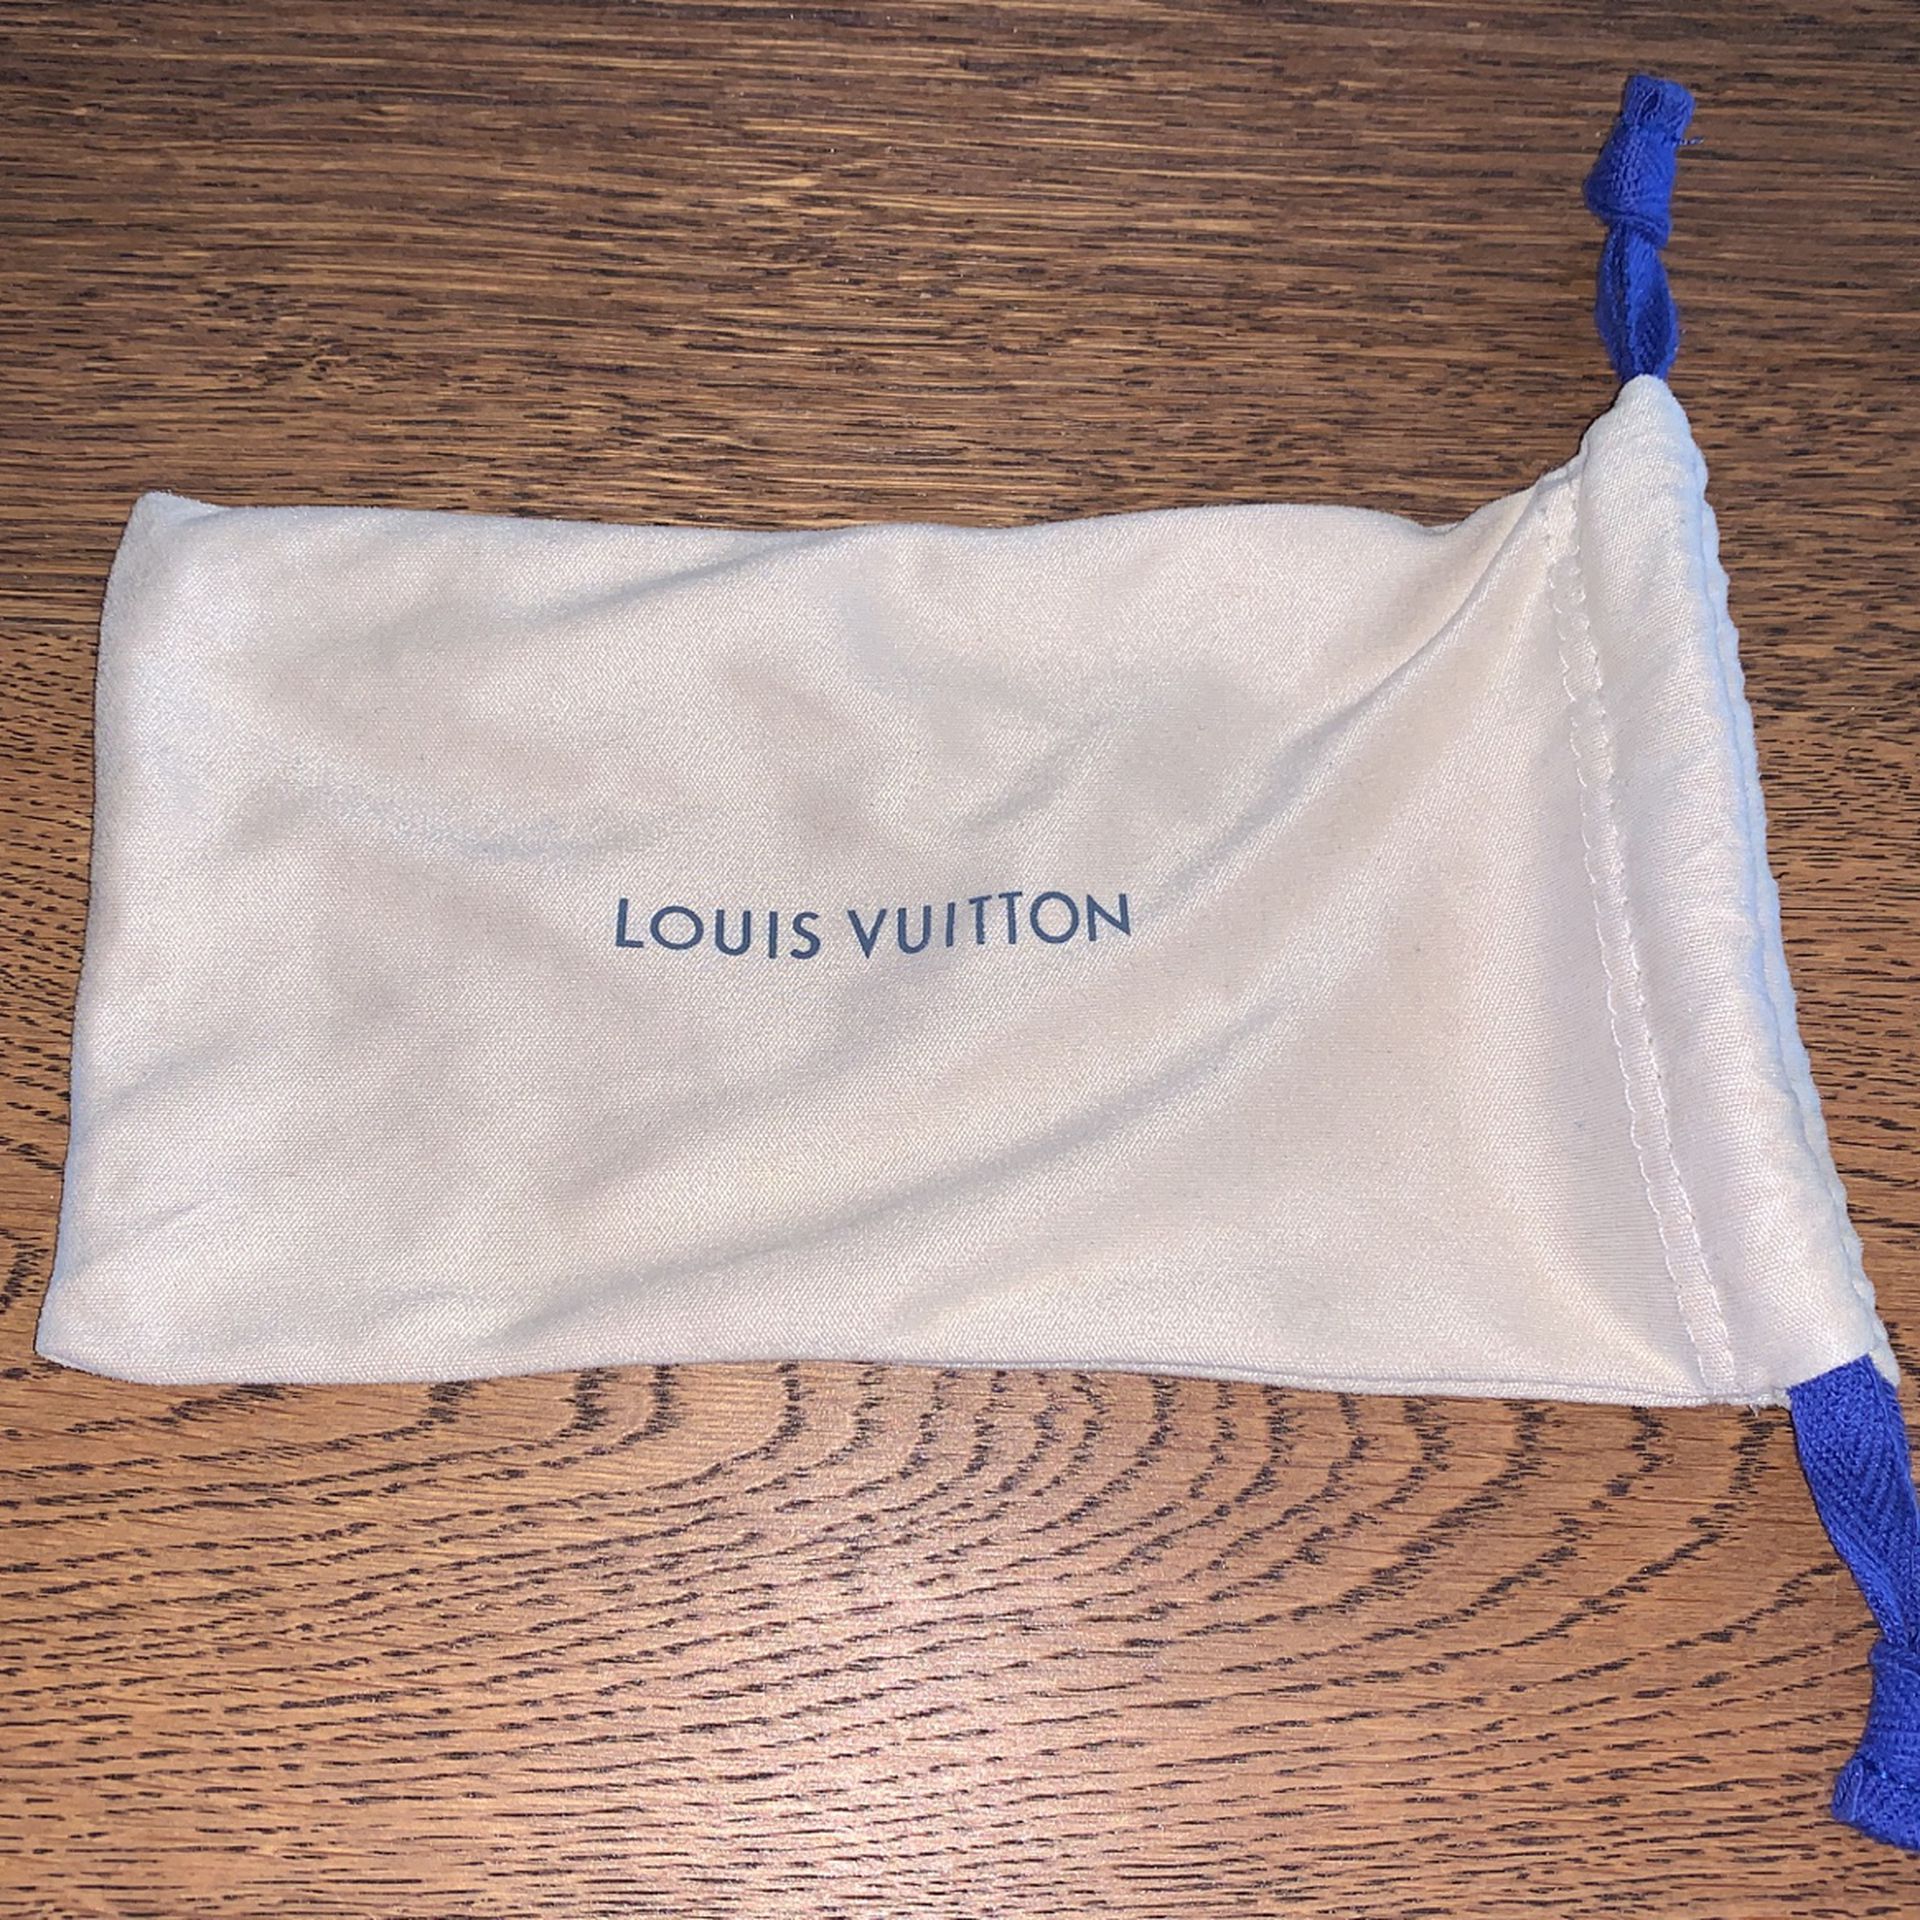 Louis Vuitton 2022 La Grande Bellezza Sunglasses - Black Sunglasses,  Accessories - LOU795761